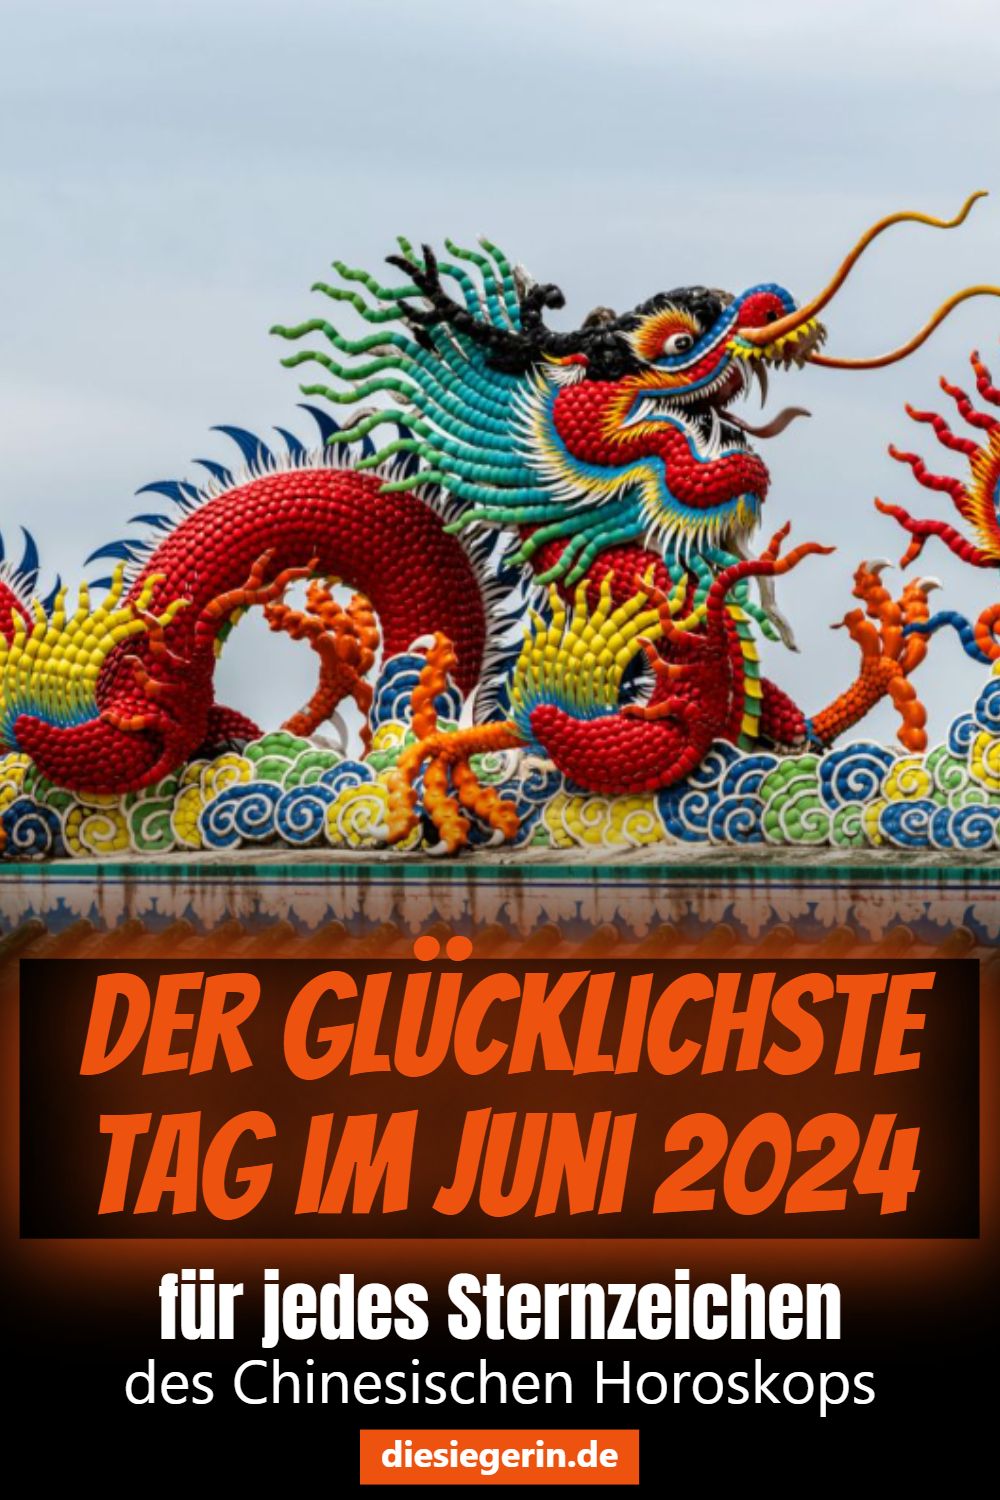 Der glücklichste Tag im Juni 2024 für jedes Sternzeichen des Chinesischen Horoskops